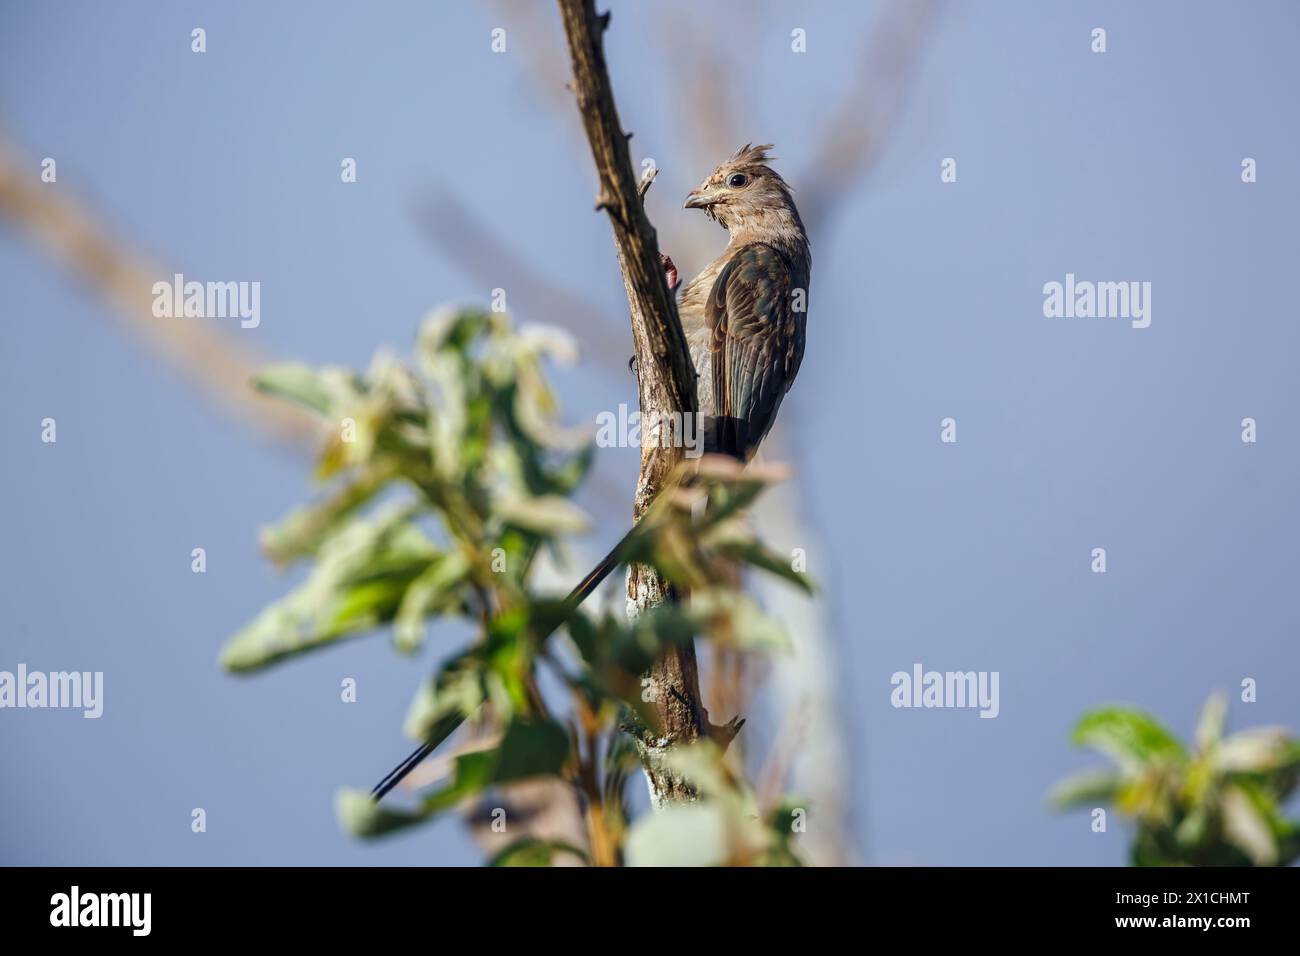 Juvénile de l'oiseau mousseux à visage rouge debout sur une branche dans le parc national de Kruger, Afrique du Sud ; espèce Urocolius indicus famille des Coliidae Banque D'Images